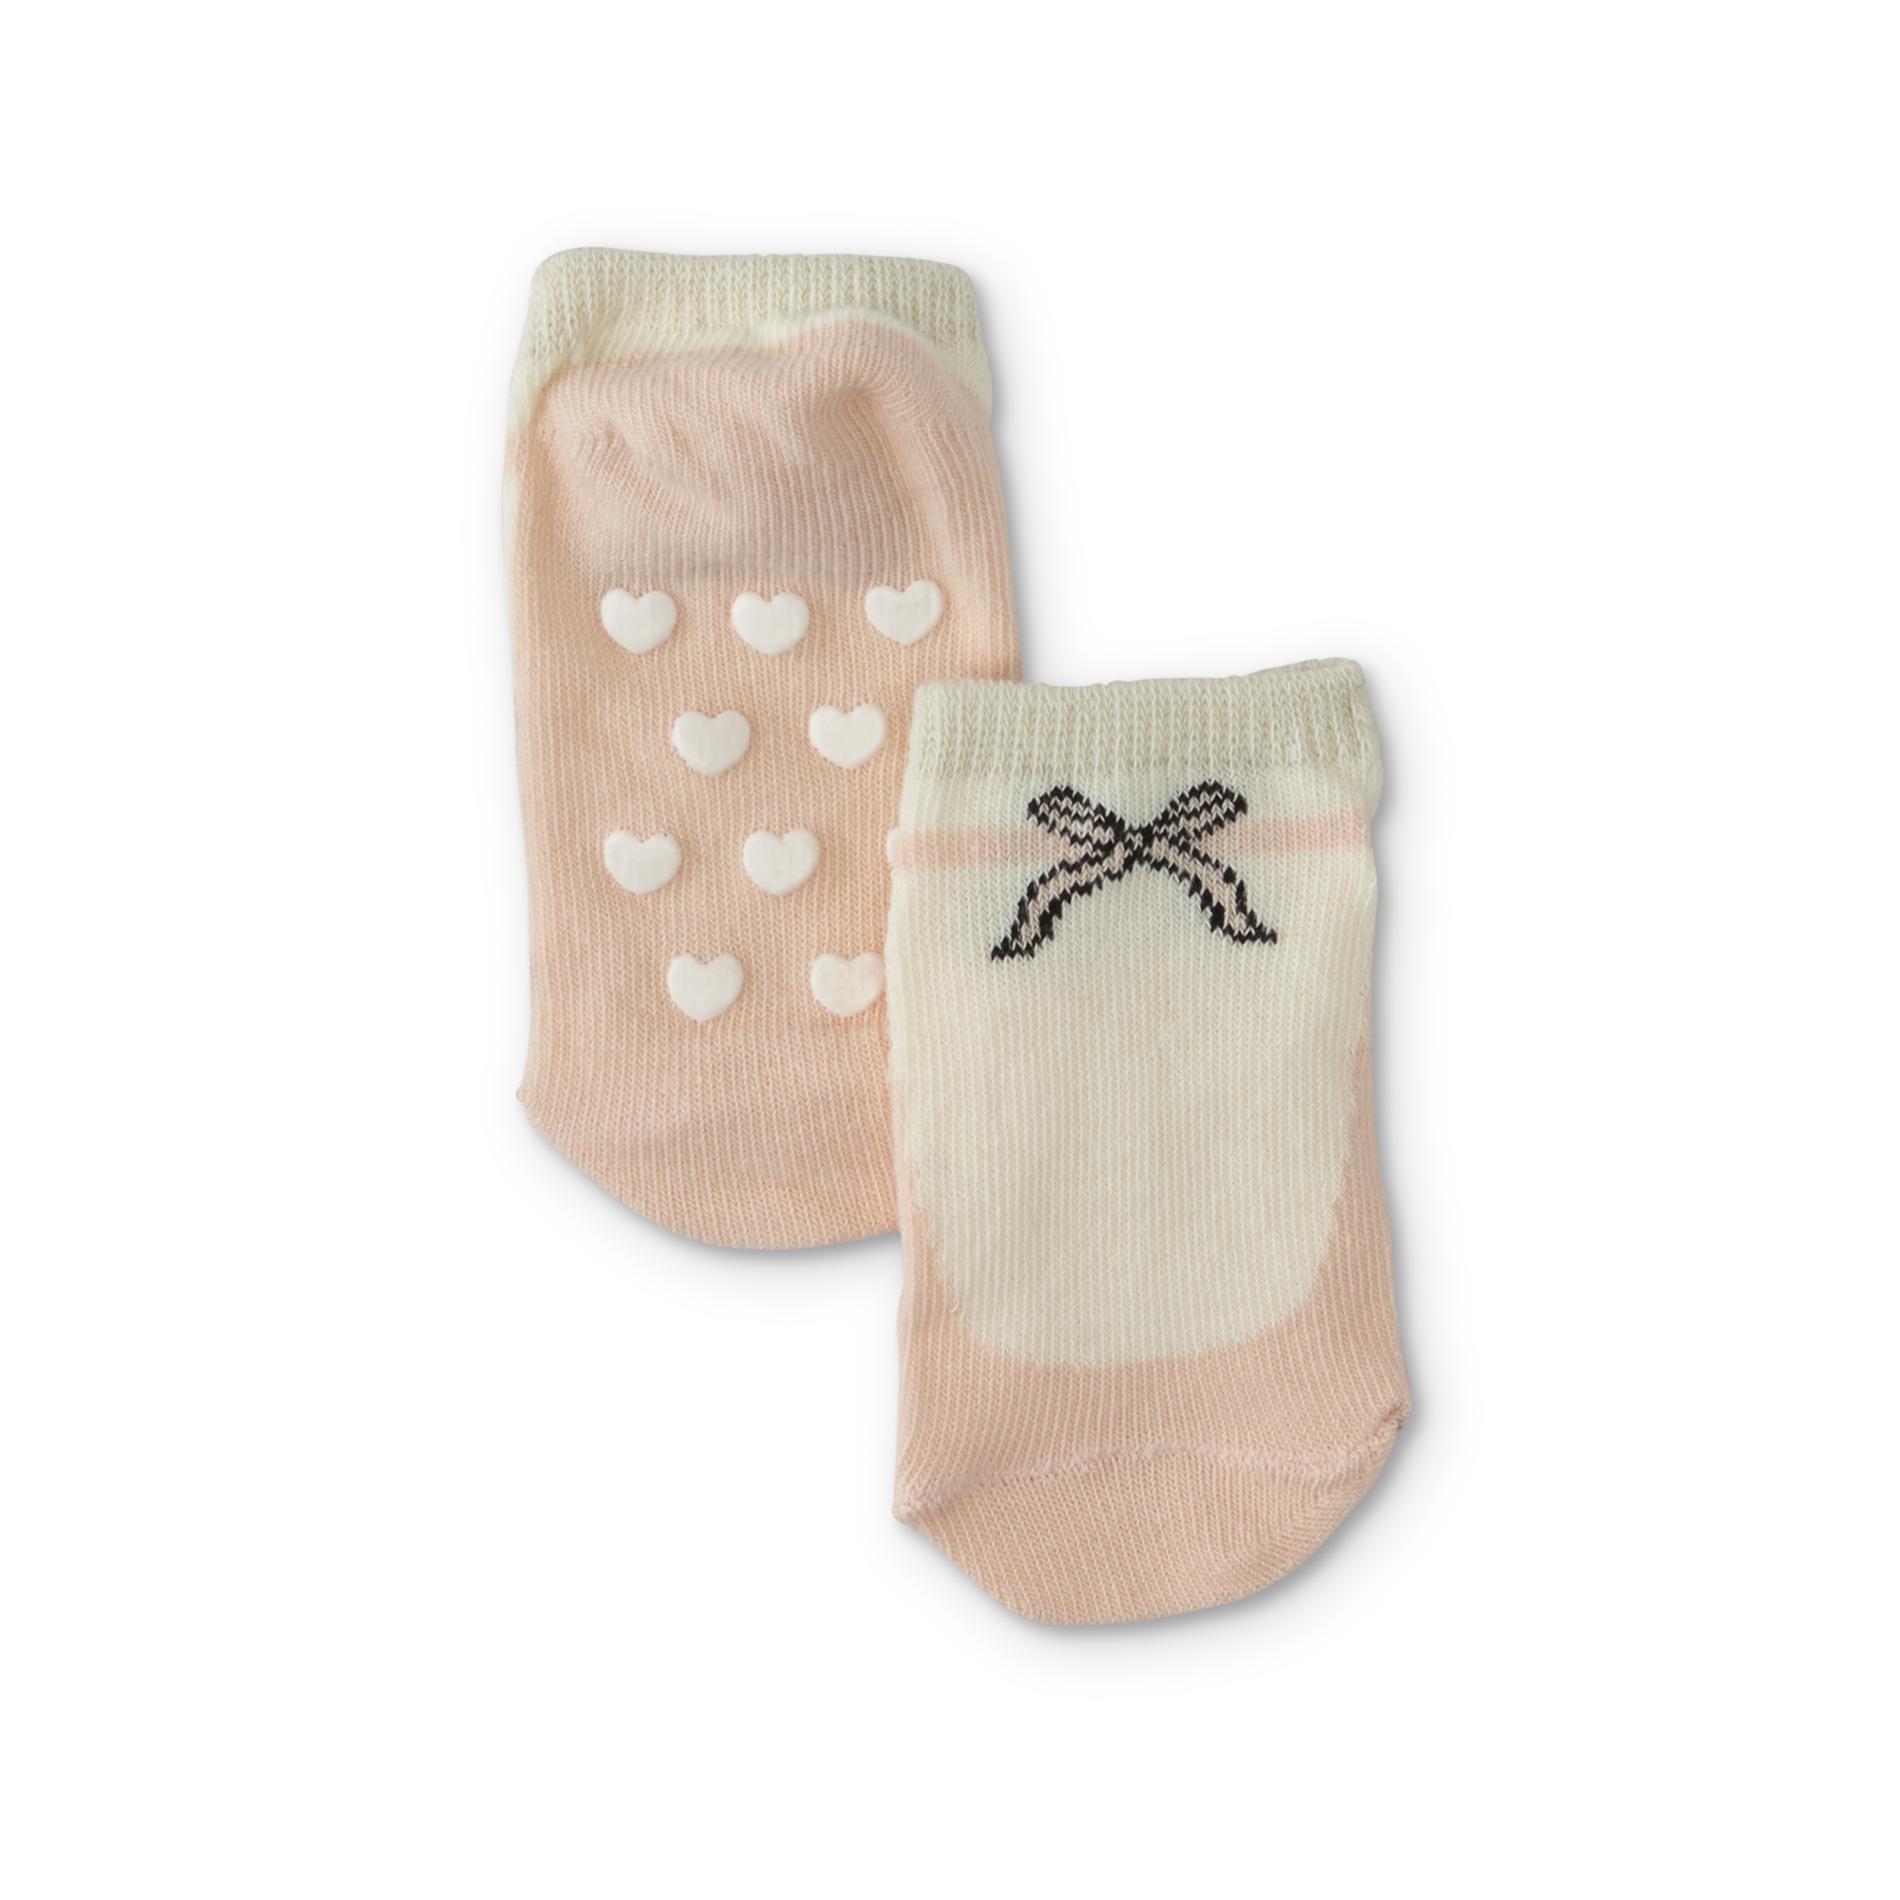 Toddler Girls' Ankle Socks - Ballerina Shoe